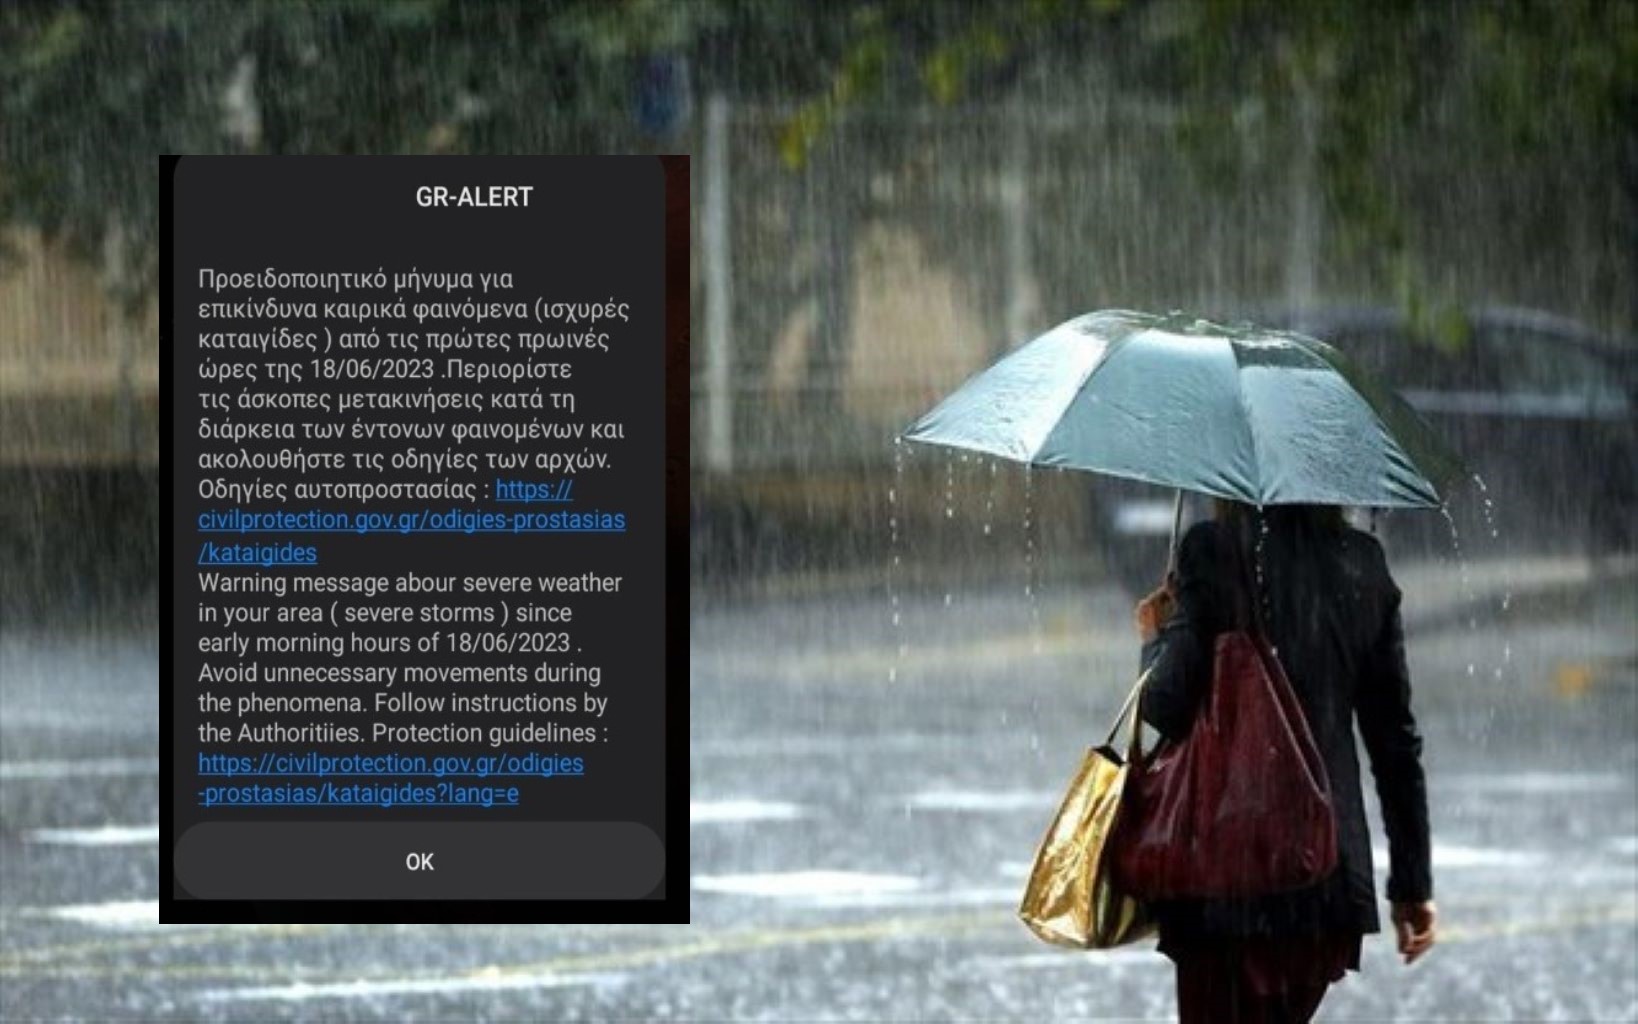 Μαγνησία- Σποράδες: Έντονη βροχόπτωση χωρίς προβλήματα- Λίγο πριν τα μεσάνυκτα ήχησε το “112”